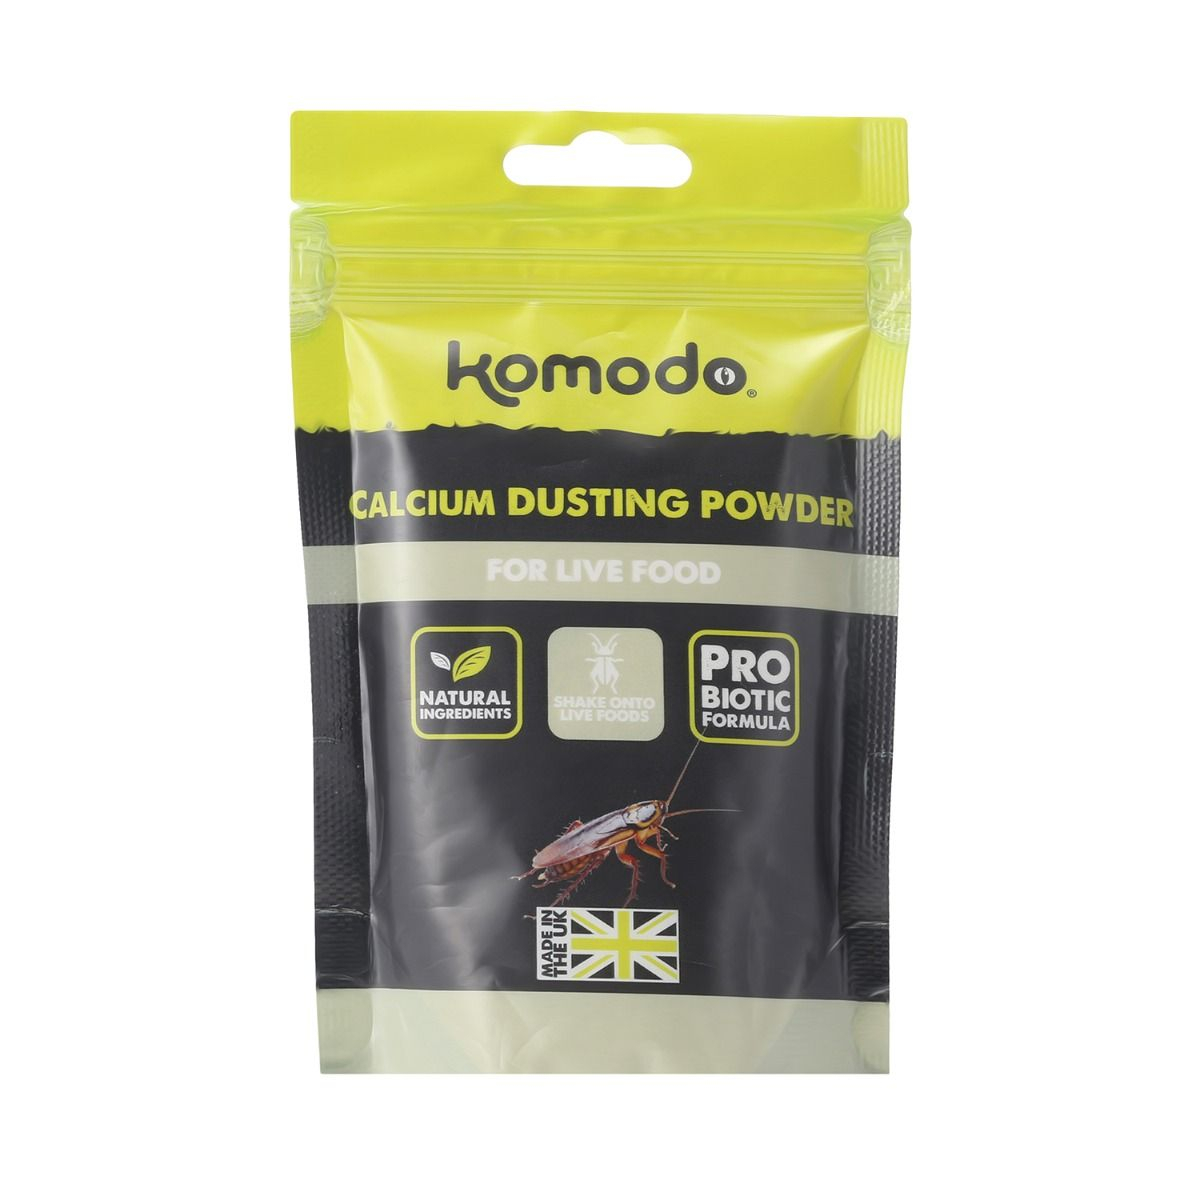 Komodo voersupplement op basis van calciumcarbonaat - 200g